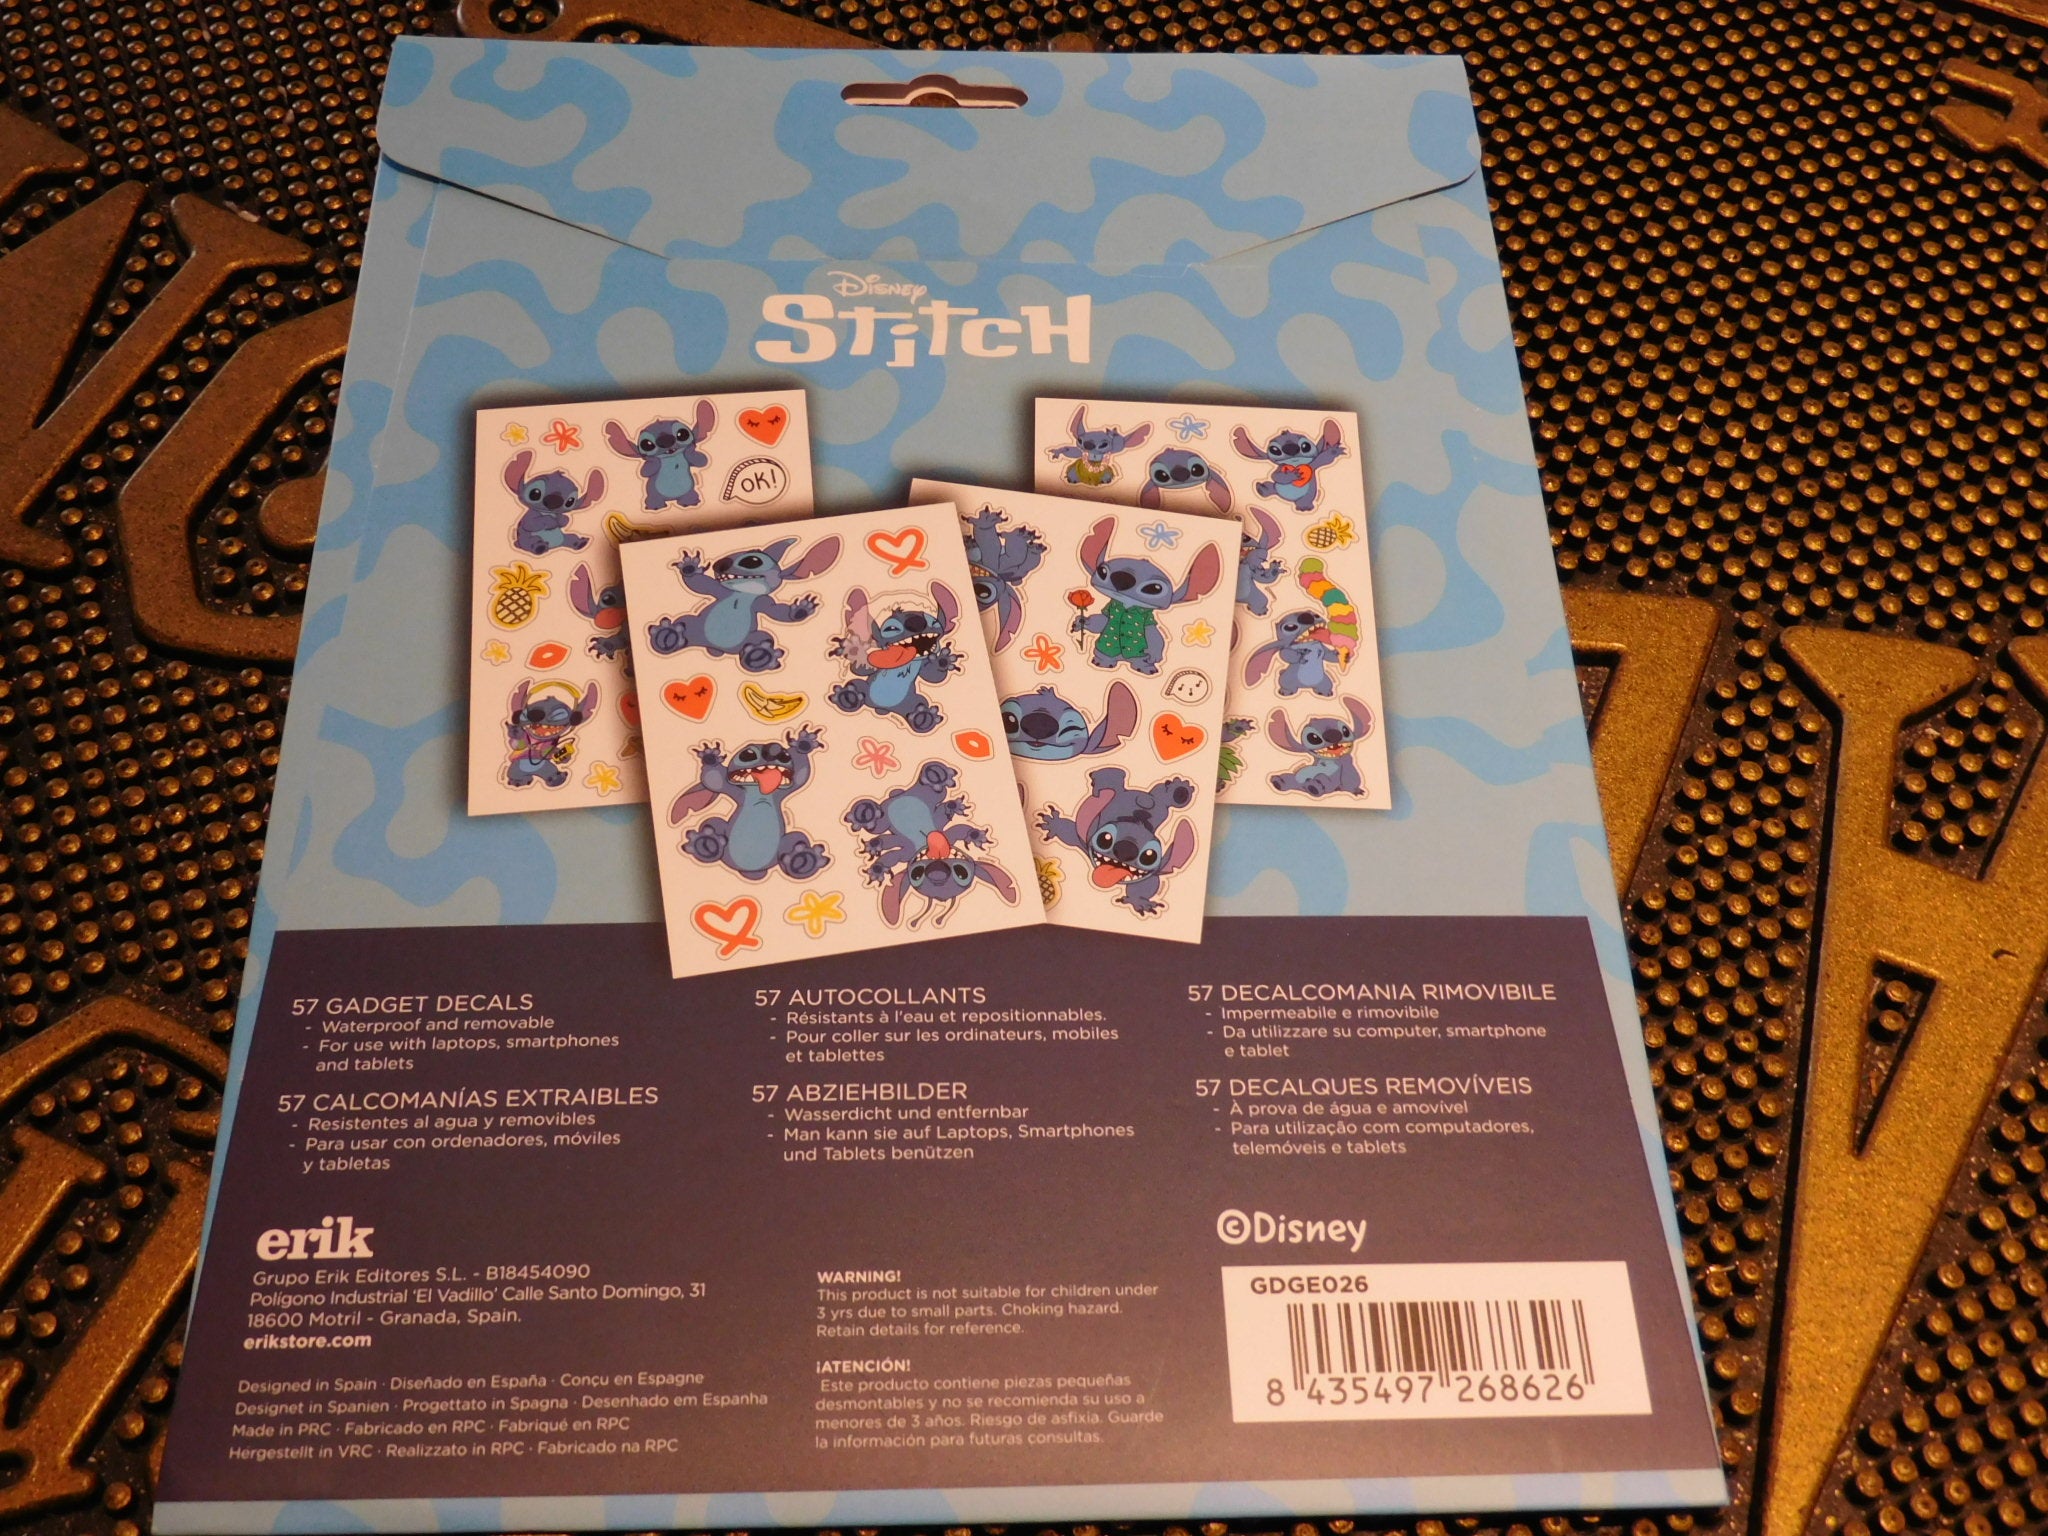 Disney: Stitch Gadget Decals